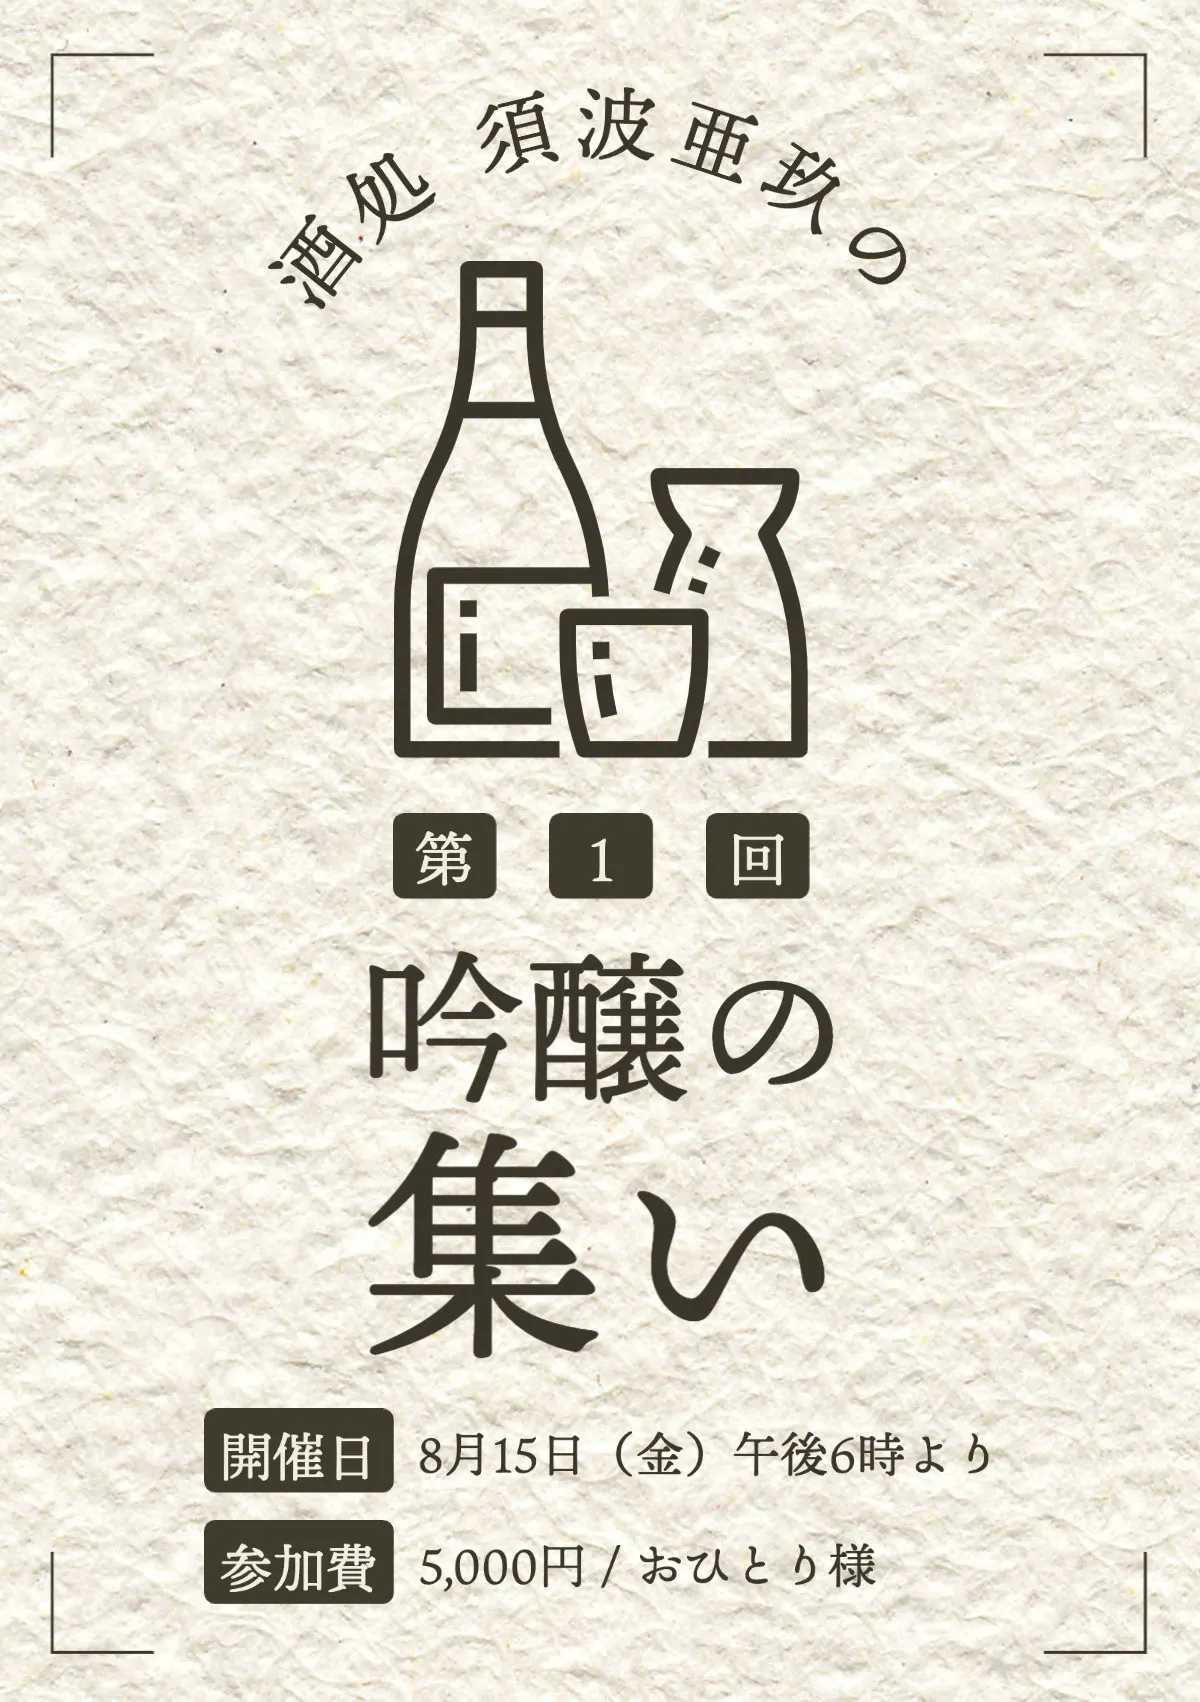 japanese sake party invitation card